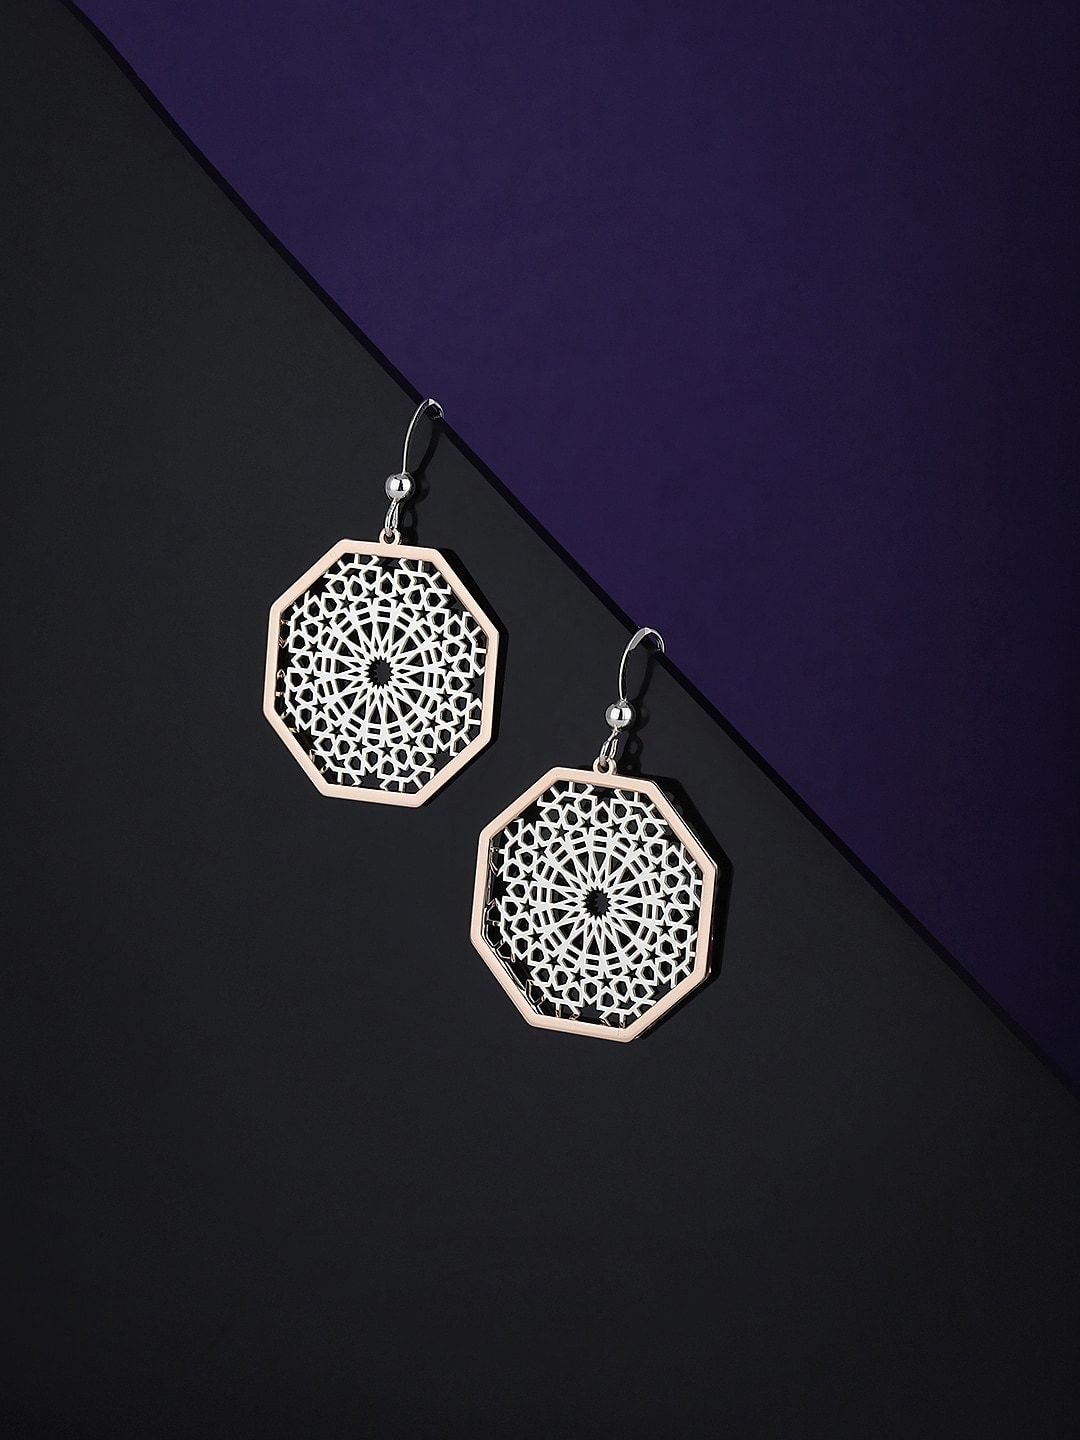 VANBELLE 925 Sterling Silver Geometric Drop Earrings Price in India